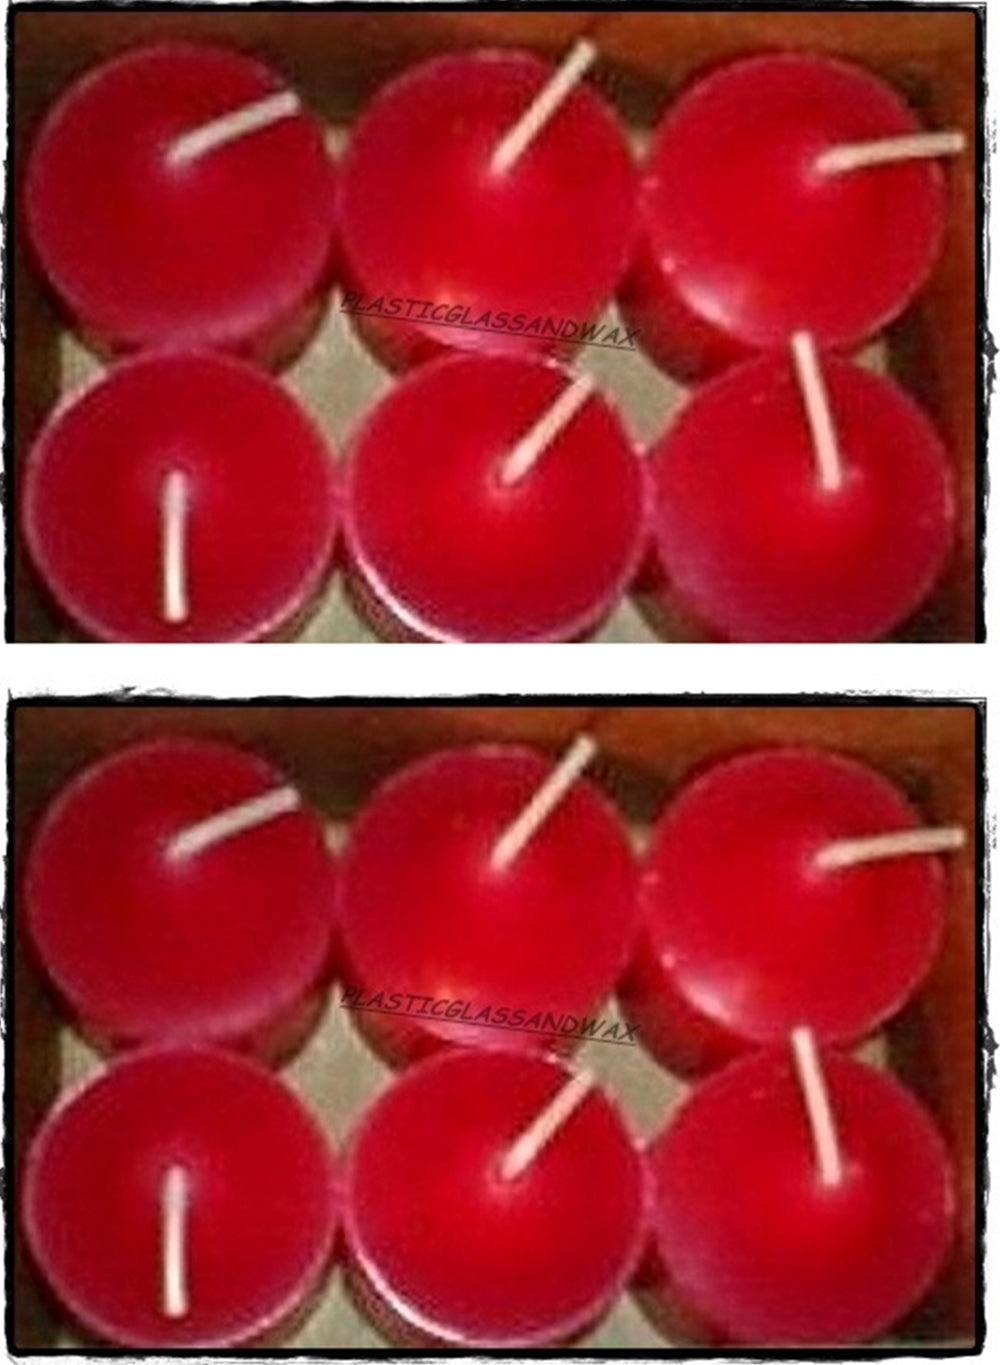 PartyLite 1 DOZEN Votive Wax Candles - 2 BOXES = 12 VOTIVES ~ CRIMSON BERRY RED